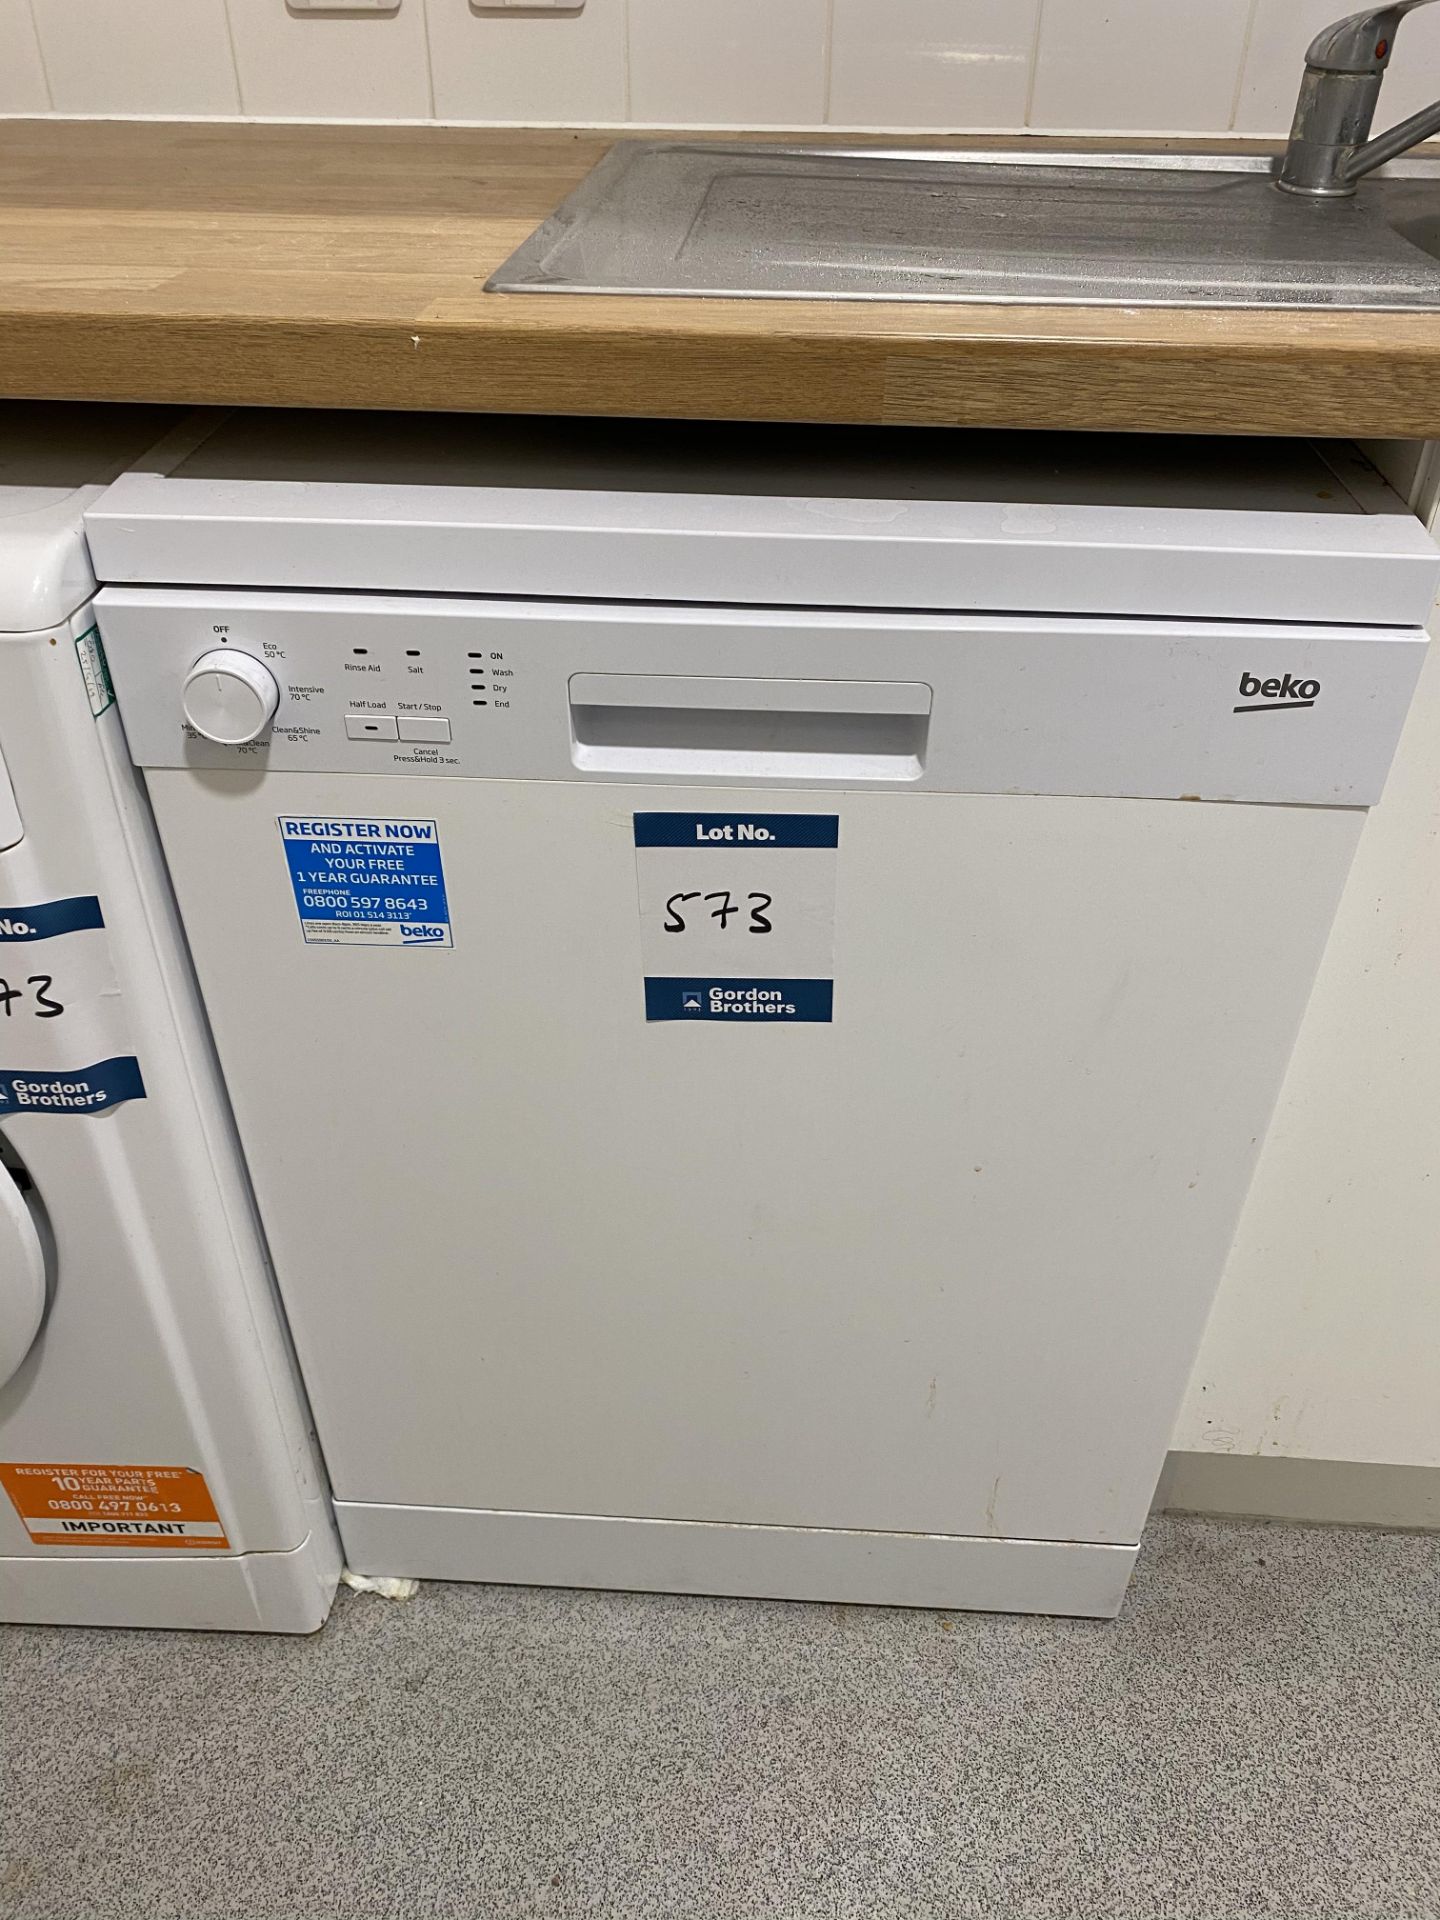 Indesit 1WDC6125 washing machine, Beko ARTIO dishwasher and Fridgemaster tall larder fridge - - Image 2 of 4